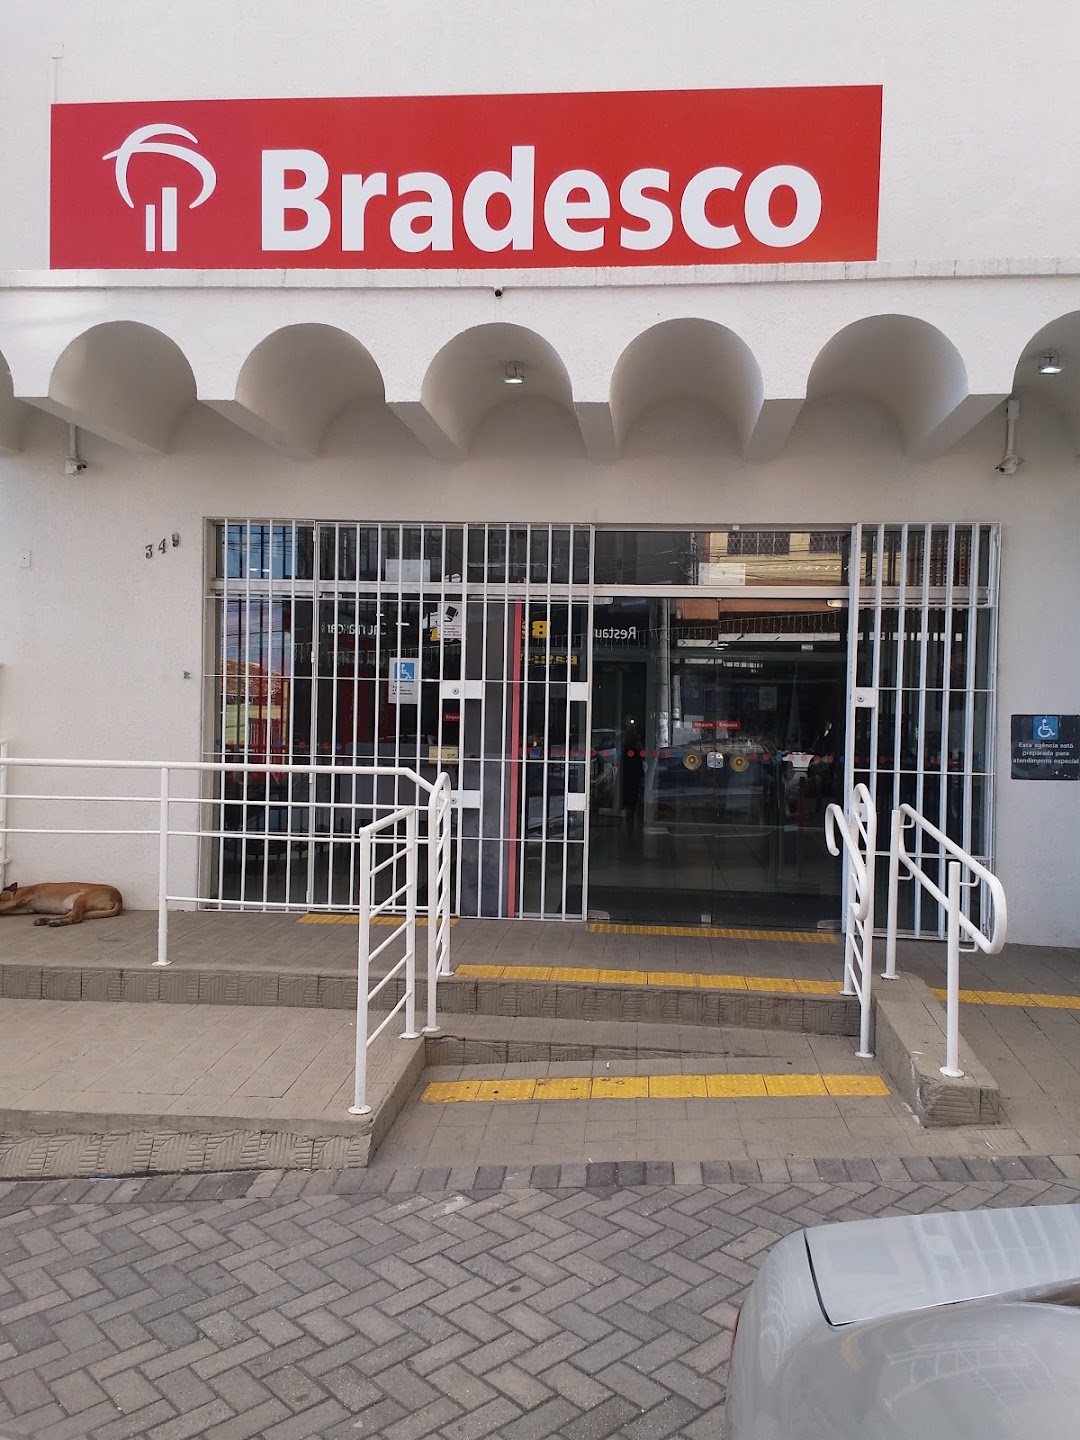 Banco Bradesco